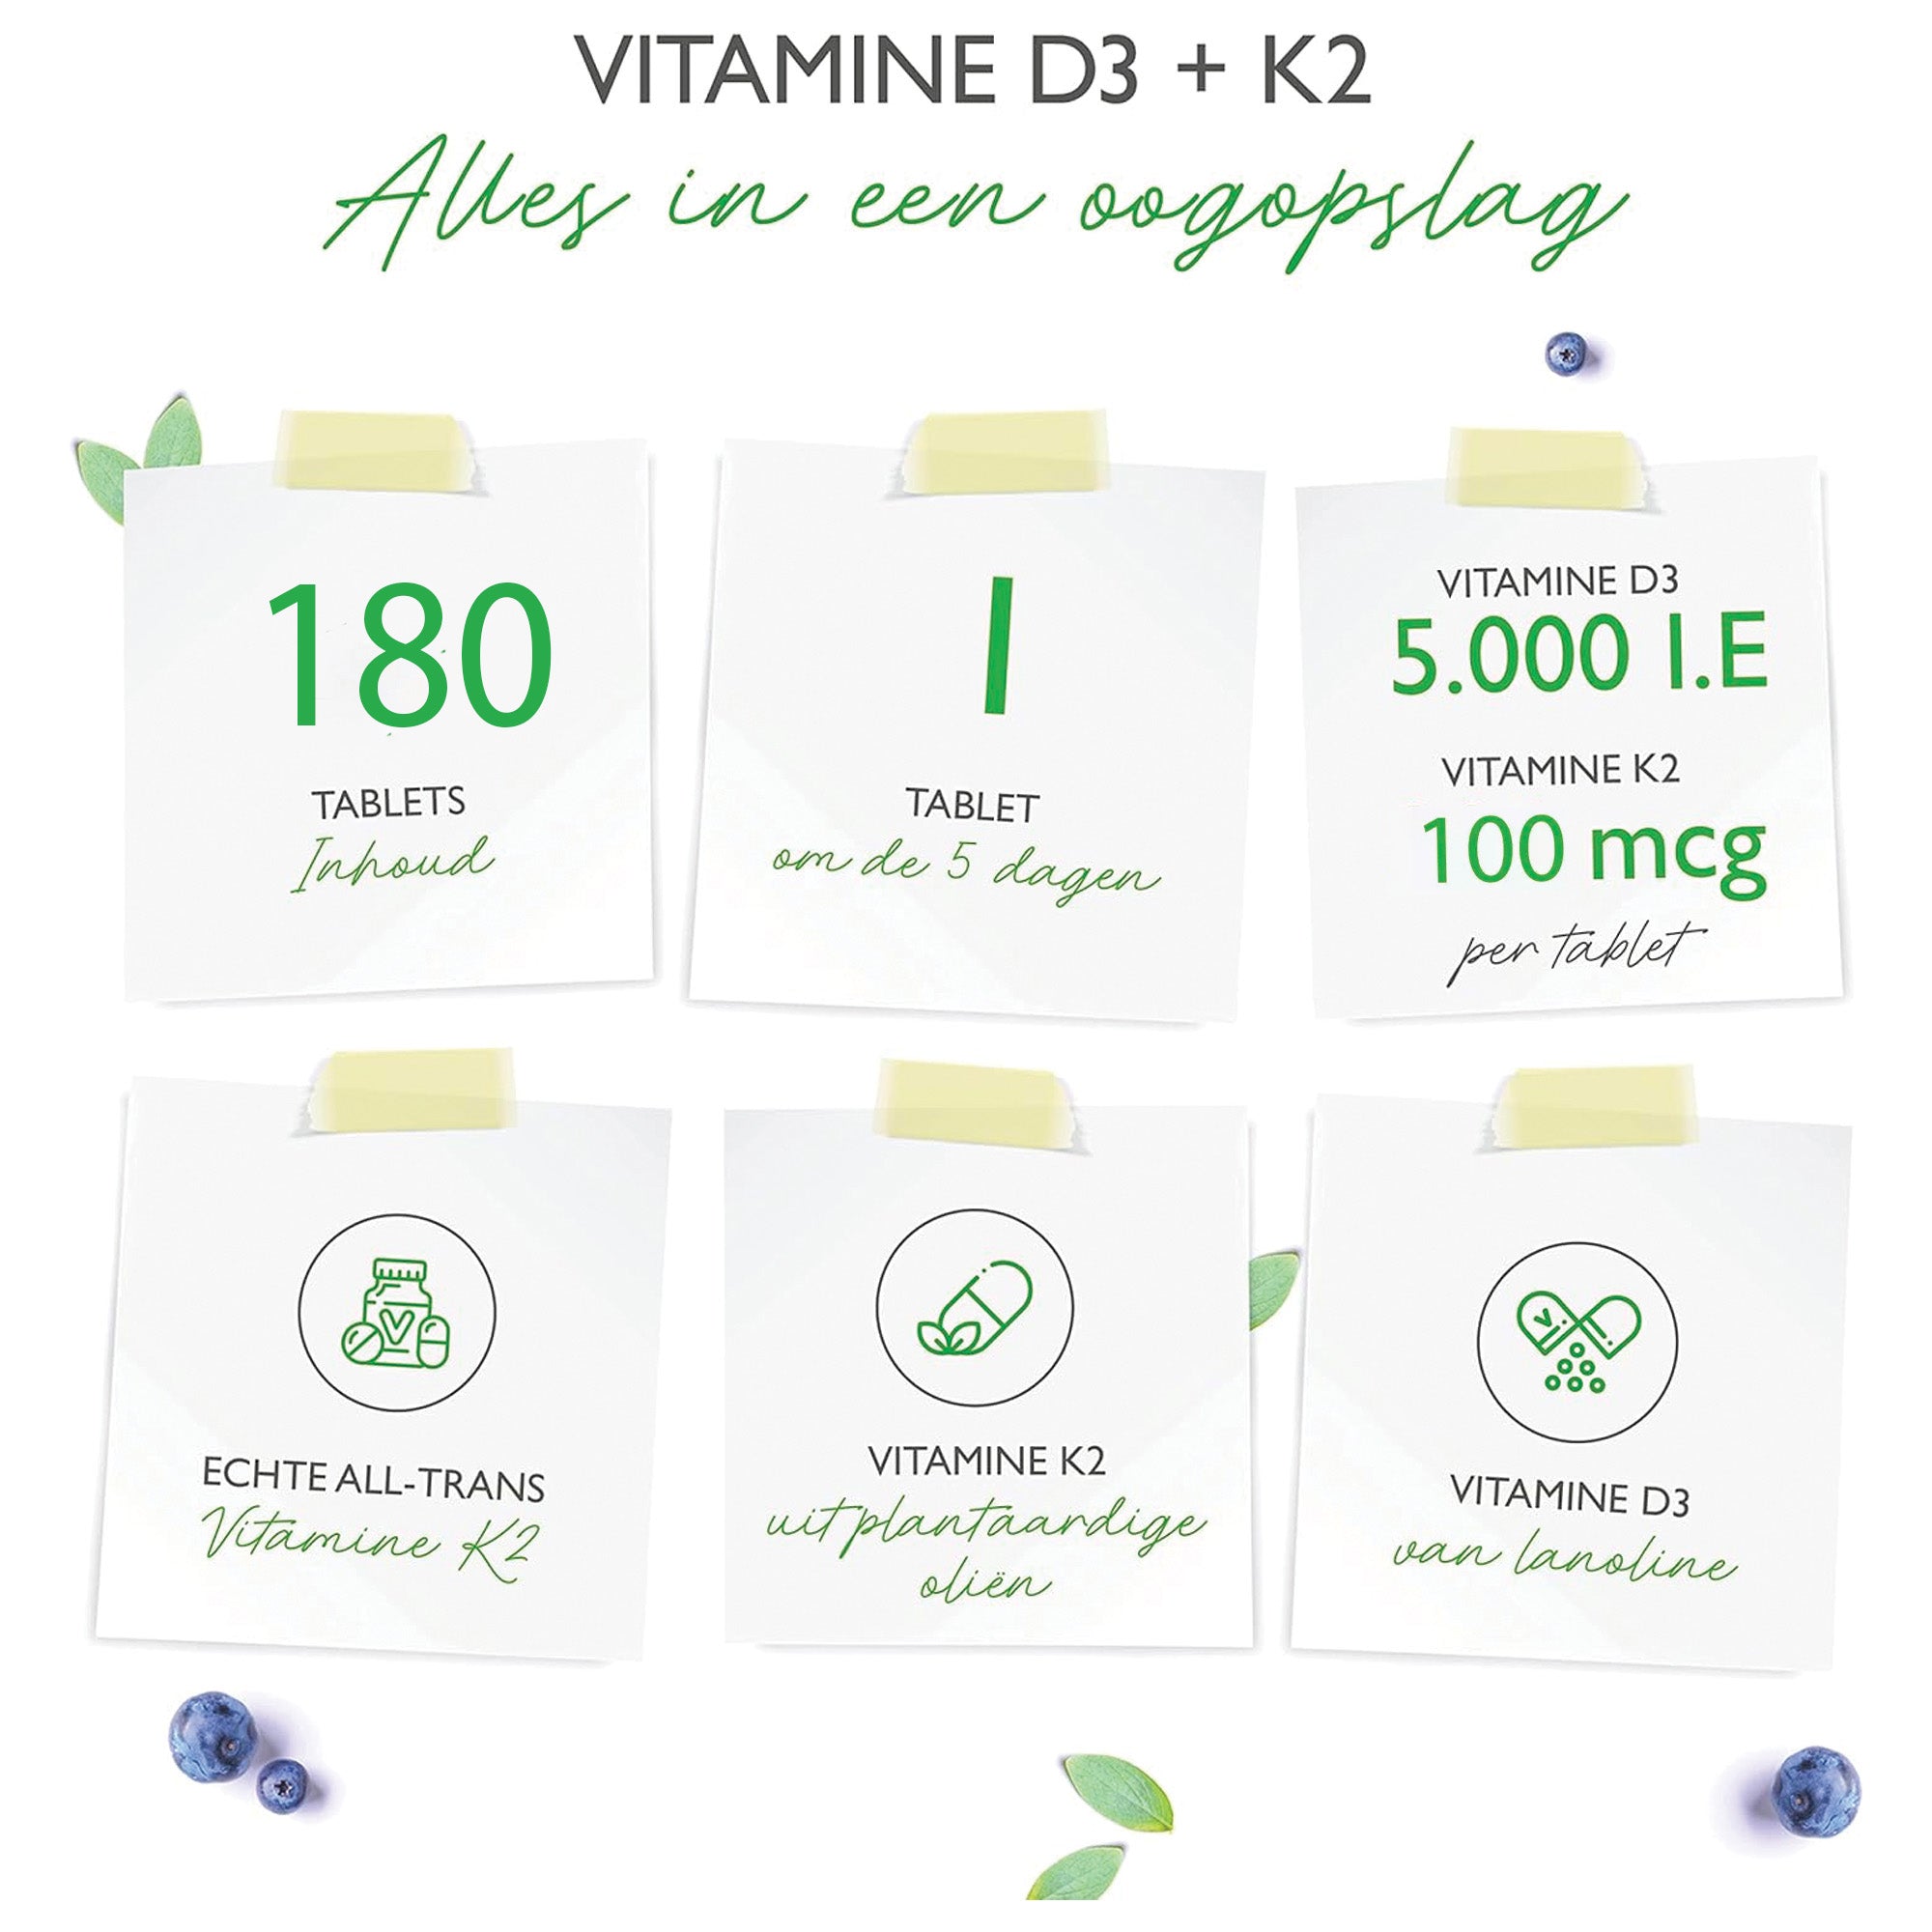 Vitamine D3, 5.000 IU/IE (125 mcg) + Vitamine K2, 100 mcg (MK-7) | 180 tabletten | Vit4ever